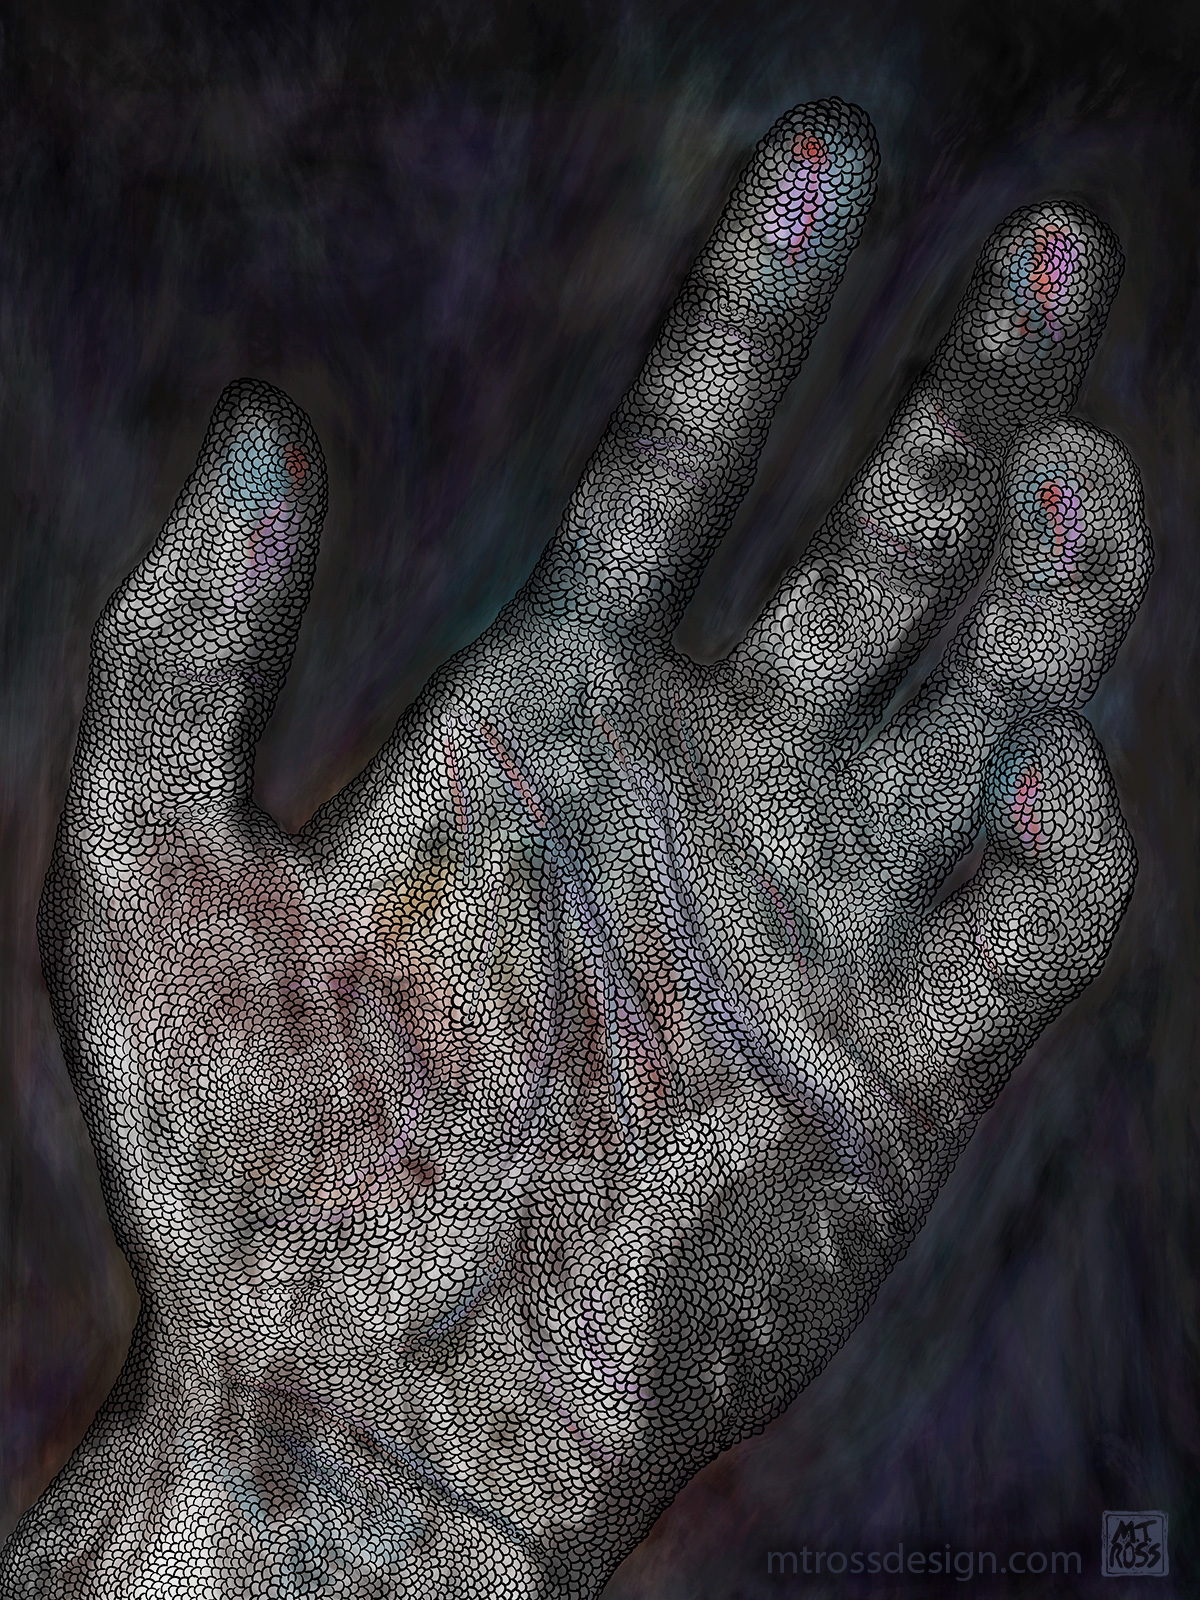 The Hand Online v1-2.jpg